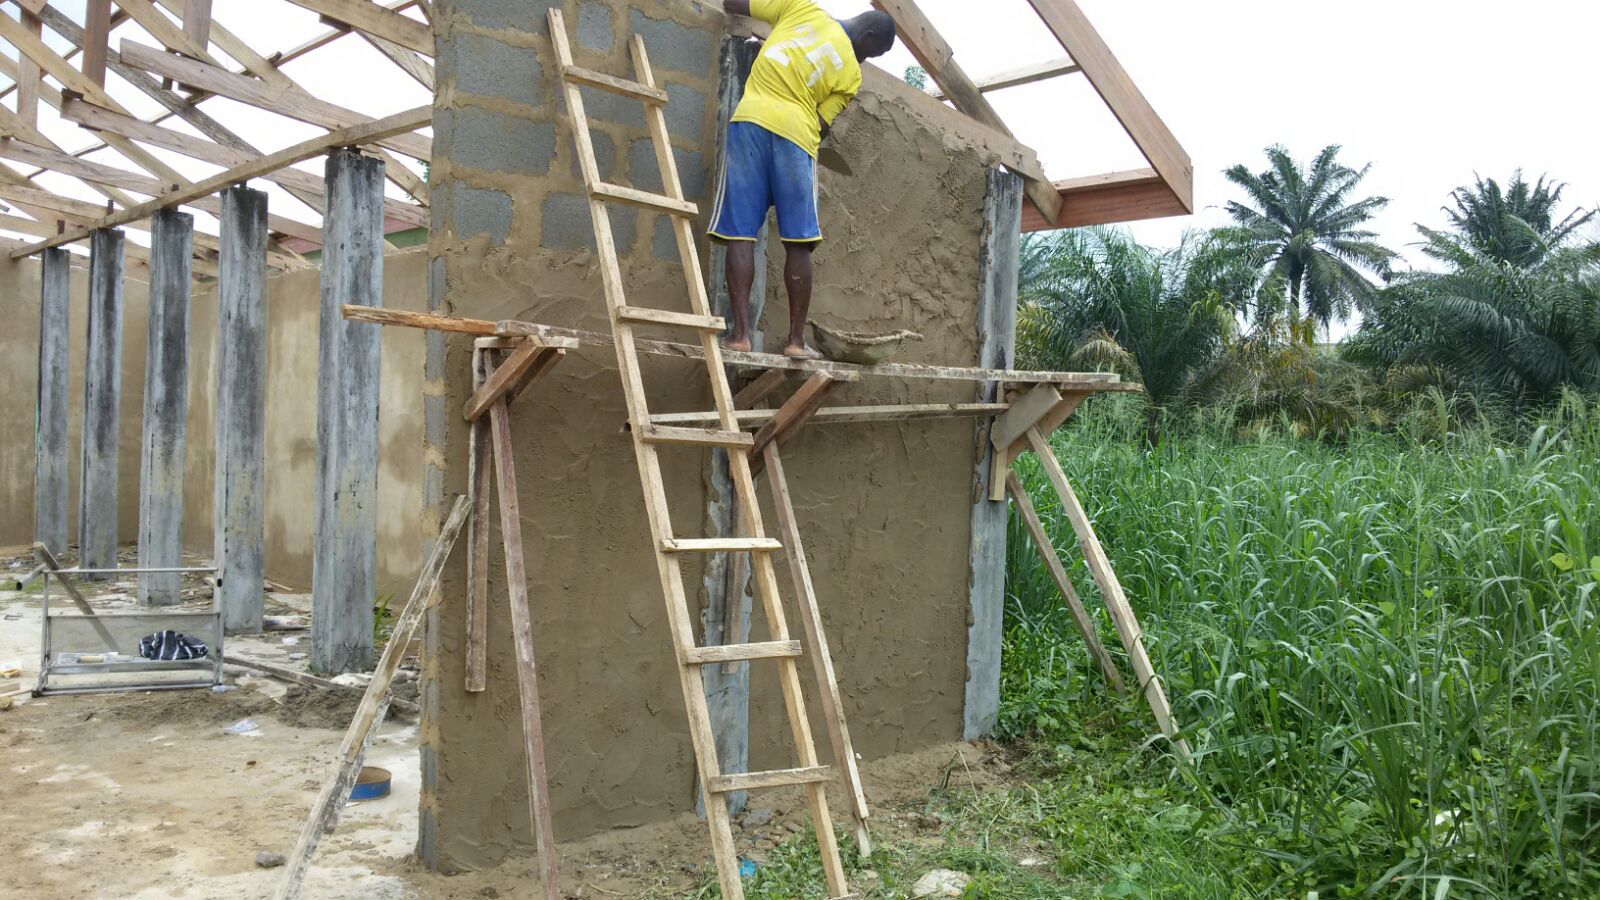 Ein Bauarbeiter in Schutzkleidung zieht eine Wand hoch bei dem Rohbau der neuen Schule in Calabar, Nigeria. Im Hintergrund ist ein weiterer Bauarbeiter zu sehen und im Vordergrund ist das Fundament der Schule erkennbar.